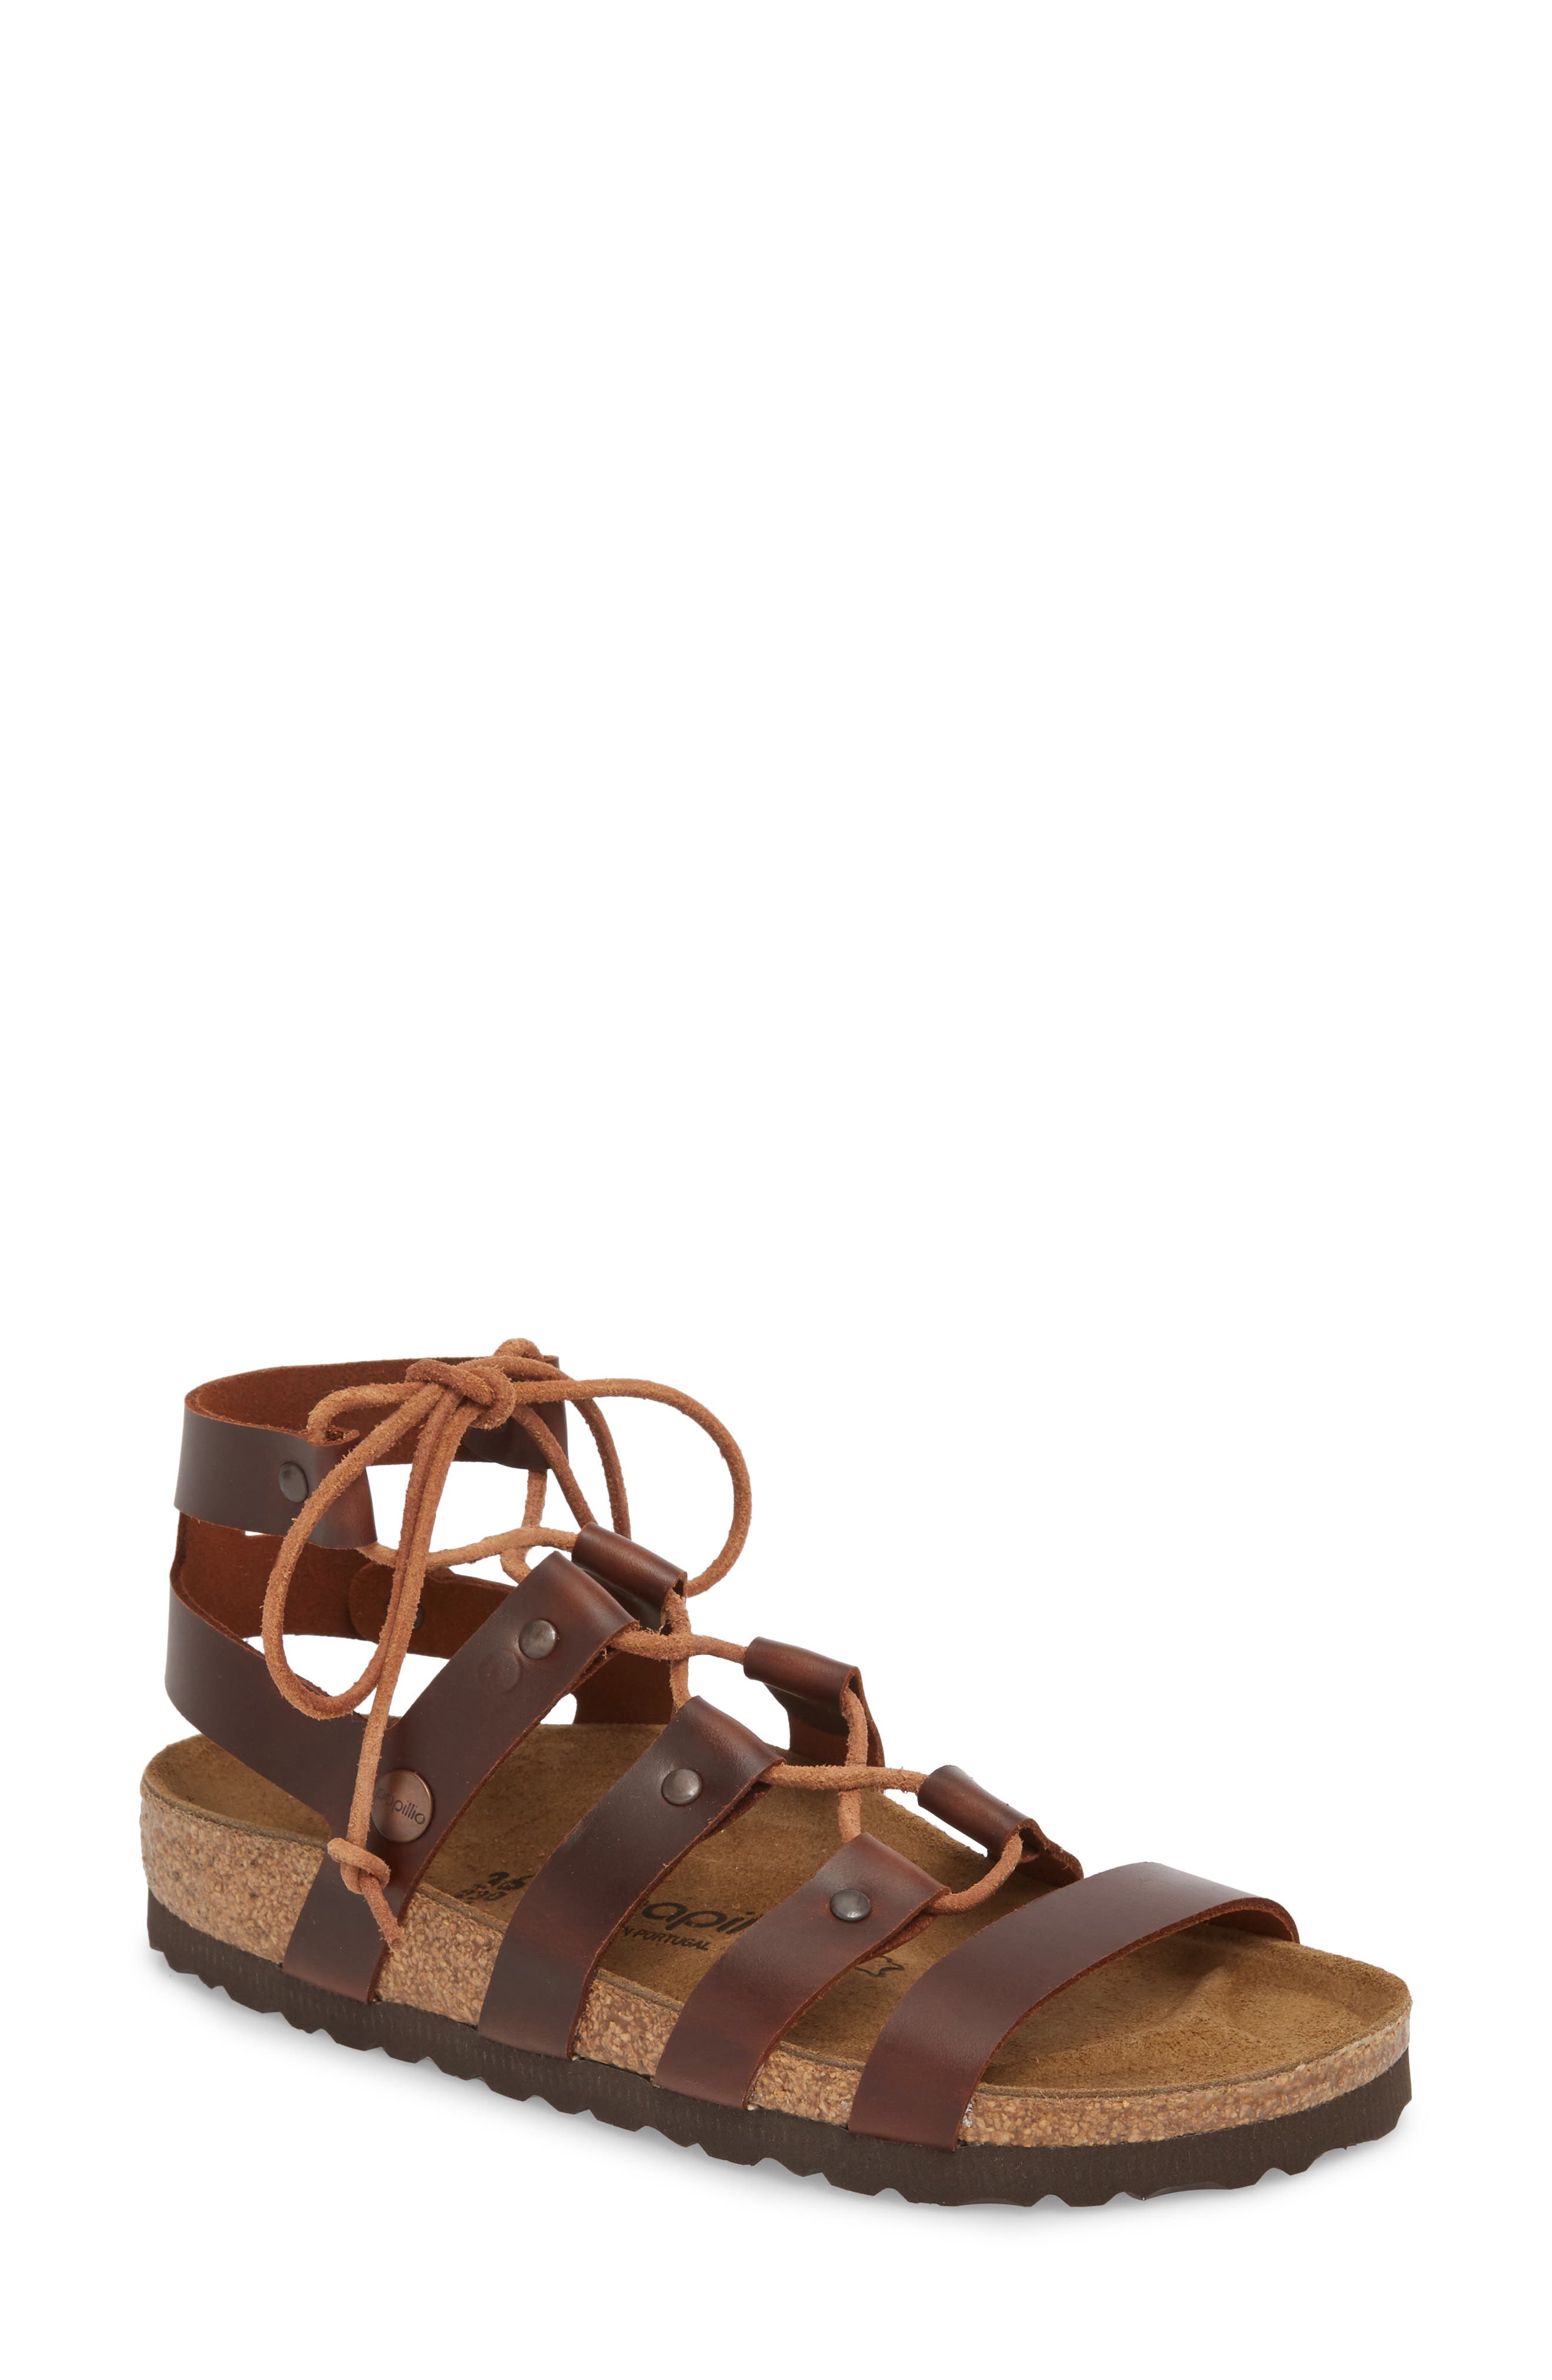 birkenstock cleo sandals